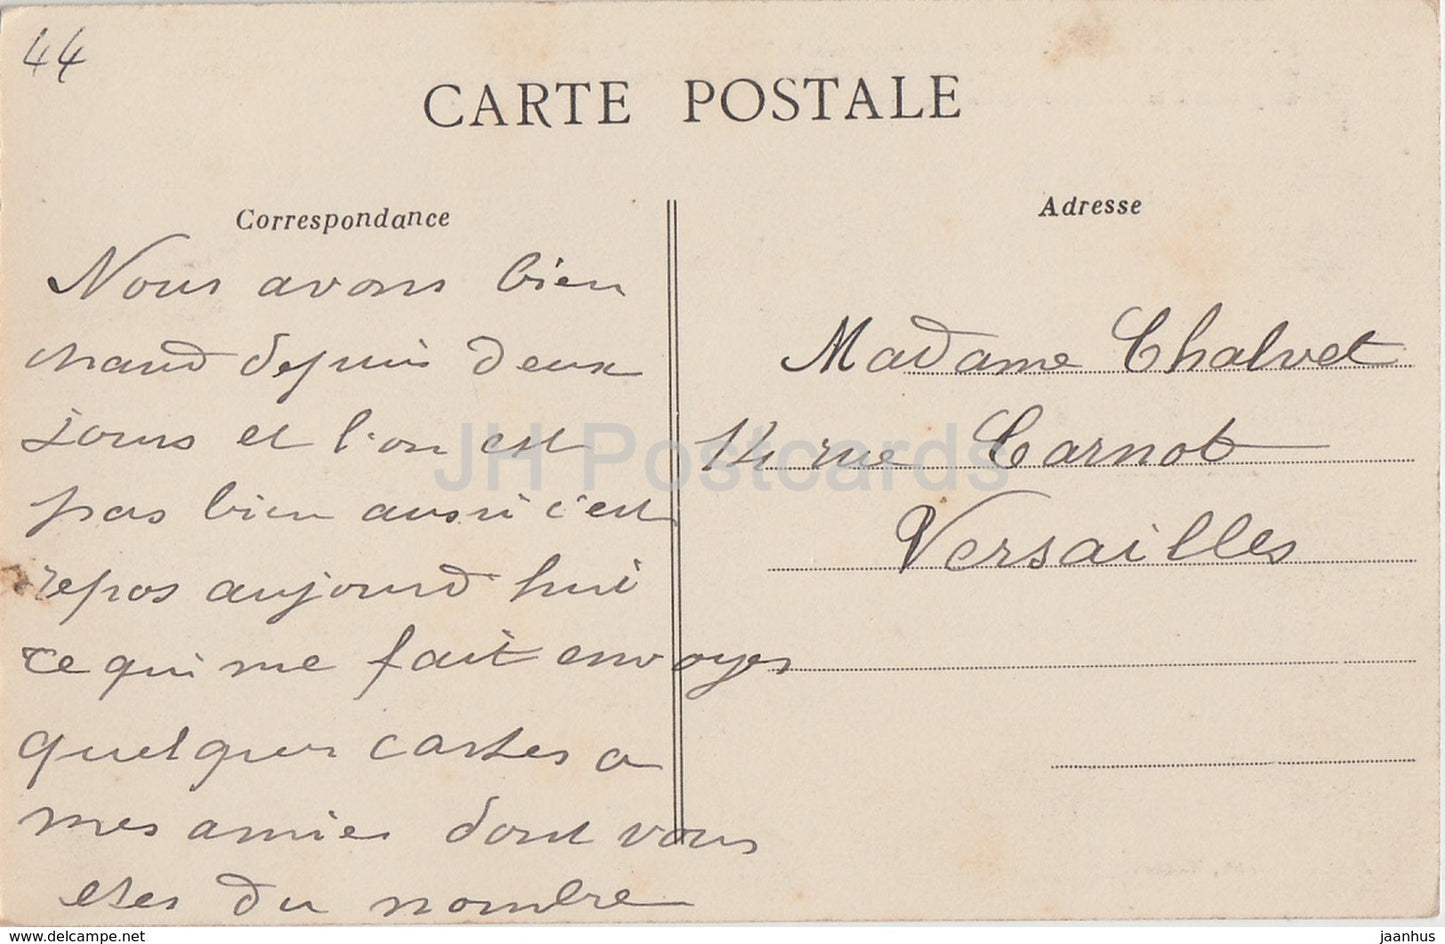 Château de Nantes - Le Petit Gouvernement - château - 11 - carte postale ancienne - 1913 - France - occasion